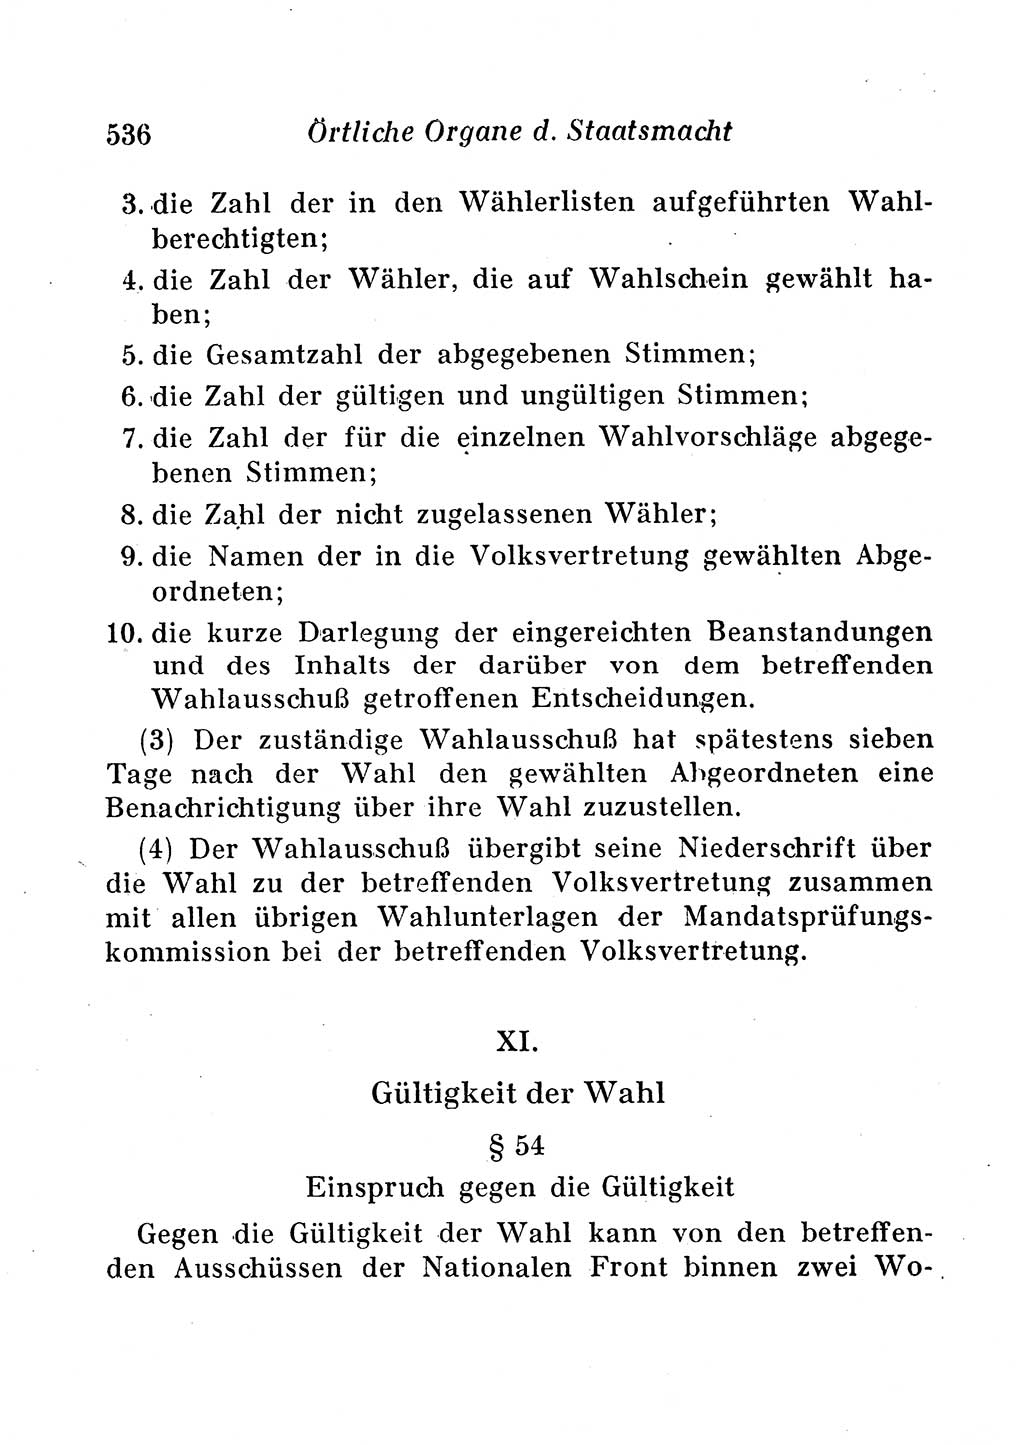 Staats- und verwaltungsrechtliche Gesetze der Deutschen Demokratischen Republik (DDR) 1958, Seite 536 (StVerwR Ges. DDR 1958, S. 536)